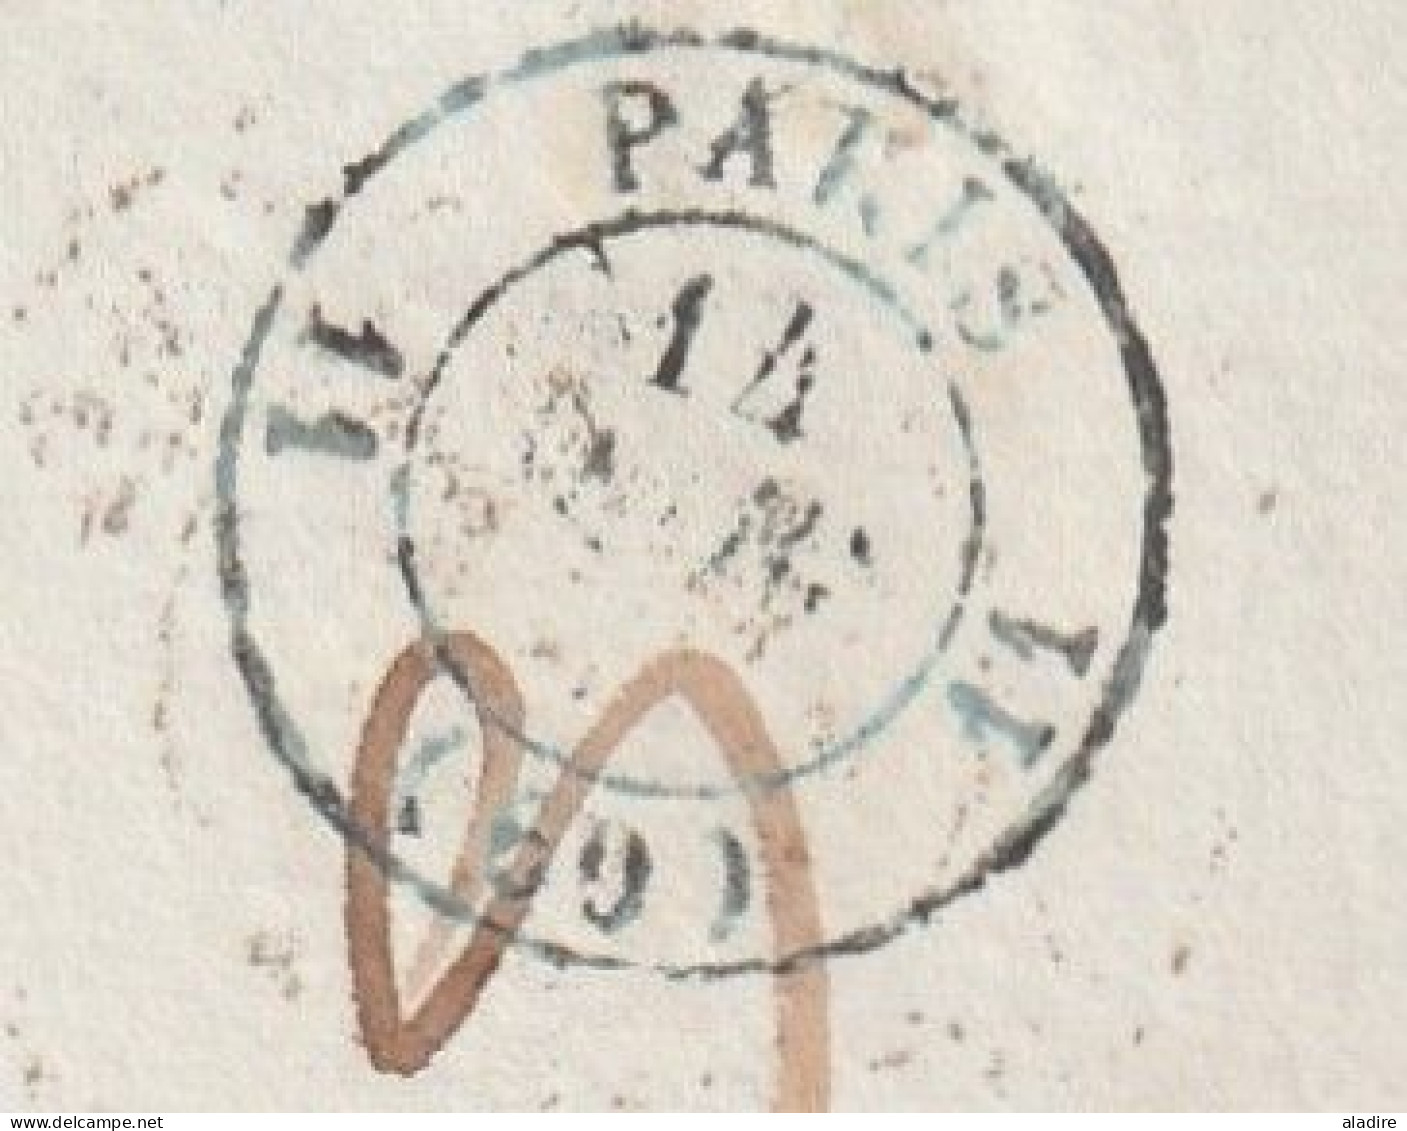 1844 - lettre pliée en PORT PAYE PP avec corresp de AMIENS vers COGNAC via PARIS - cad d'arrivée